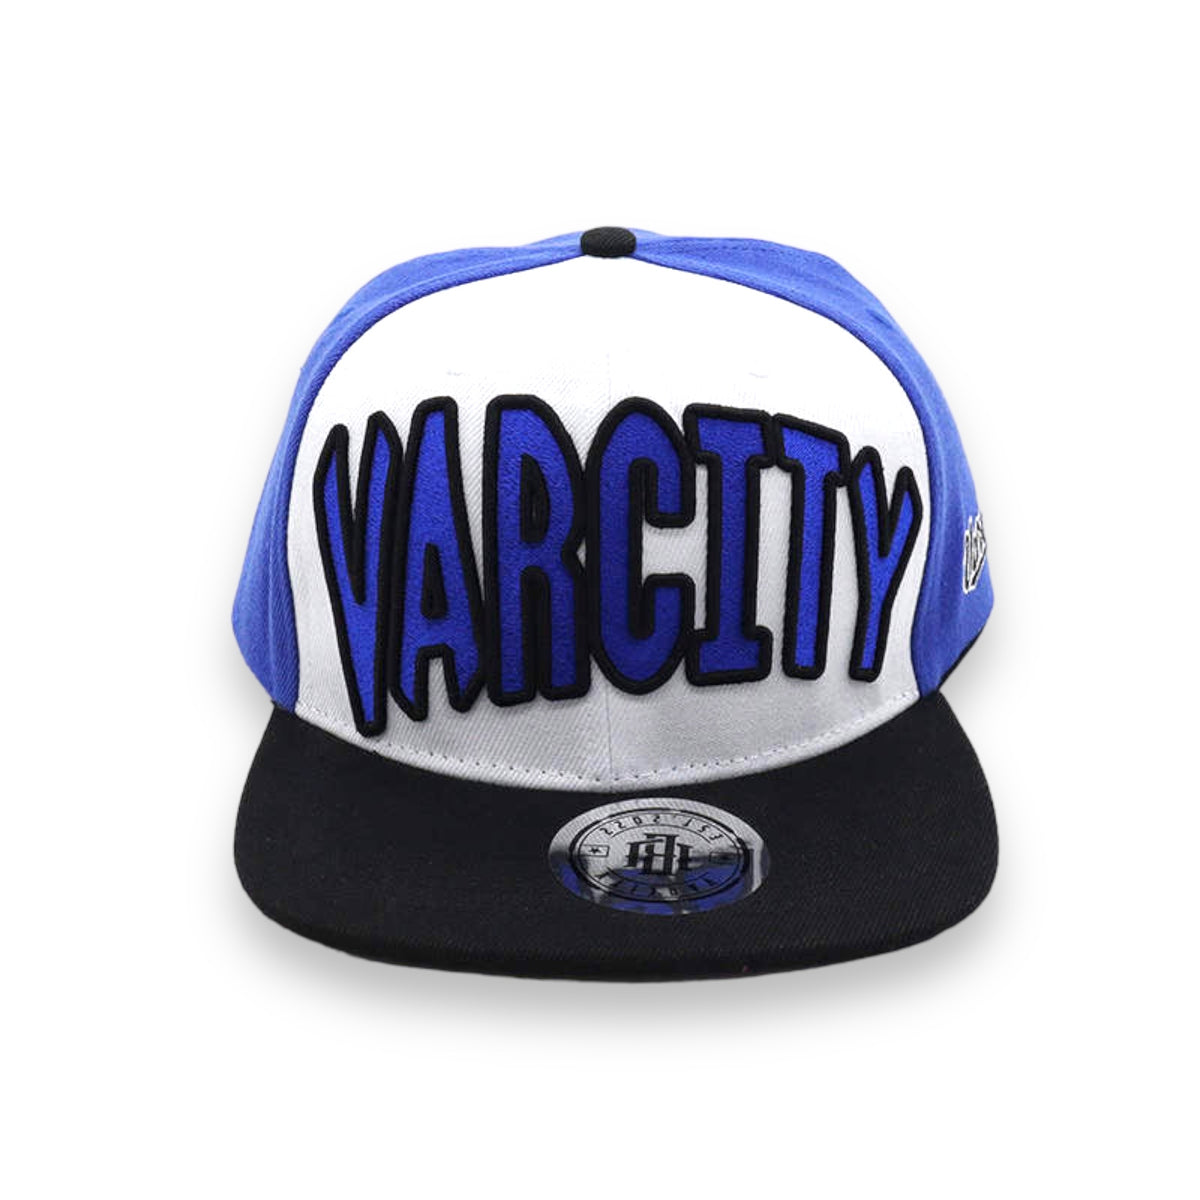 Varcity ® OG Series Snapback Blue